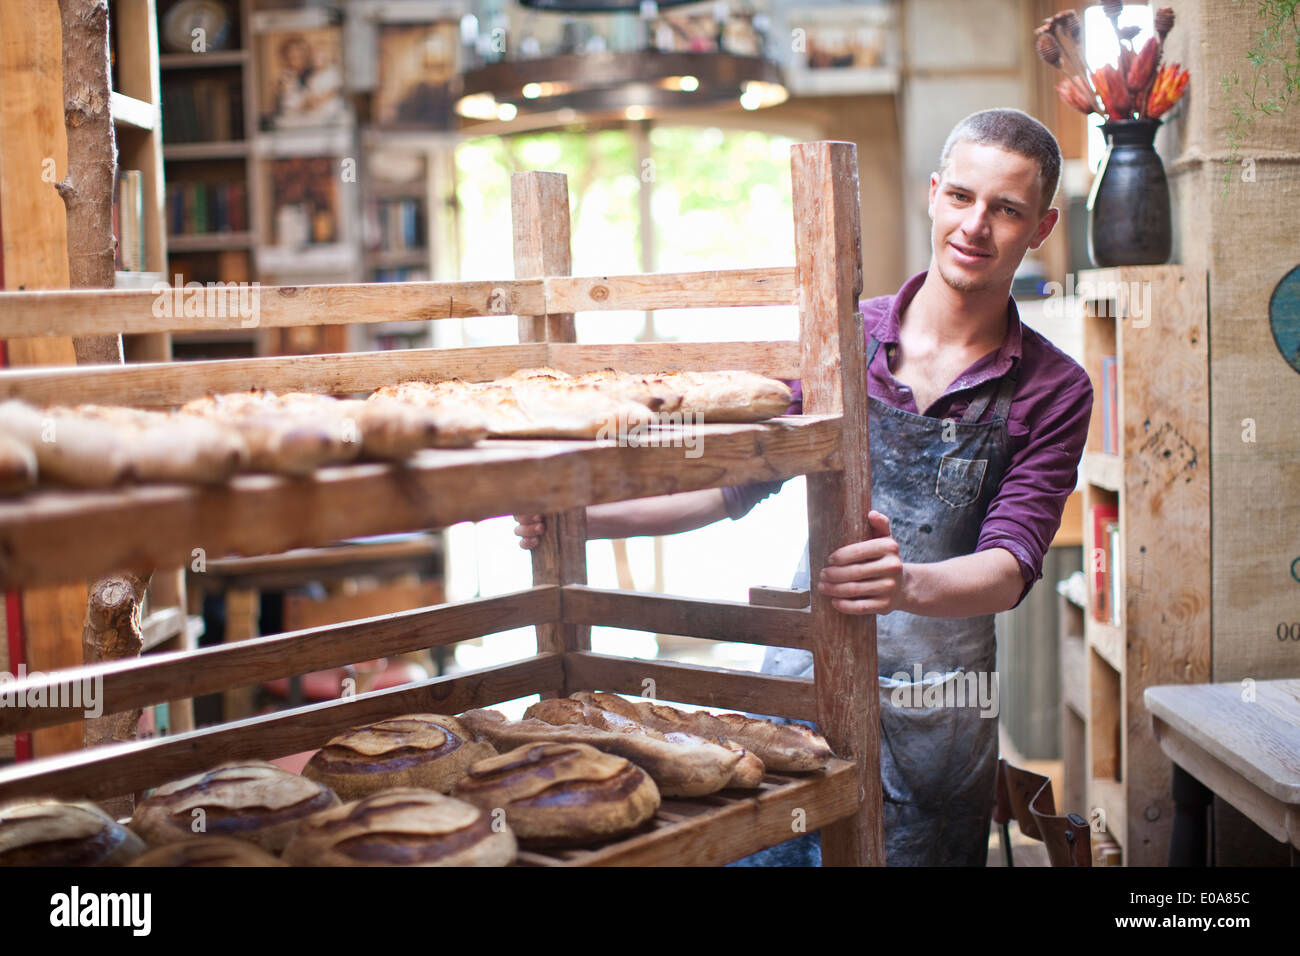 Portrait of young male baker avec étagères de pain frais Banque D'Images